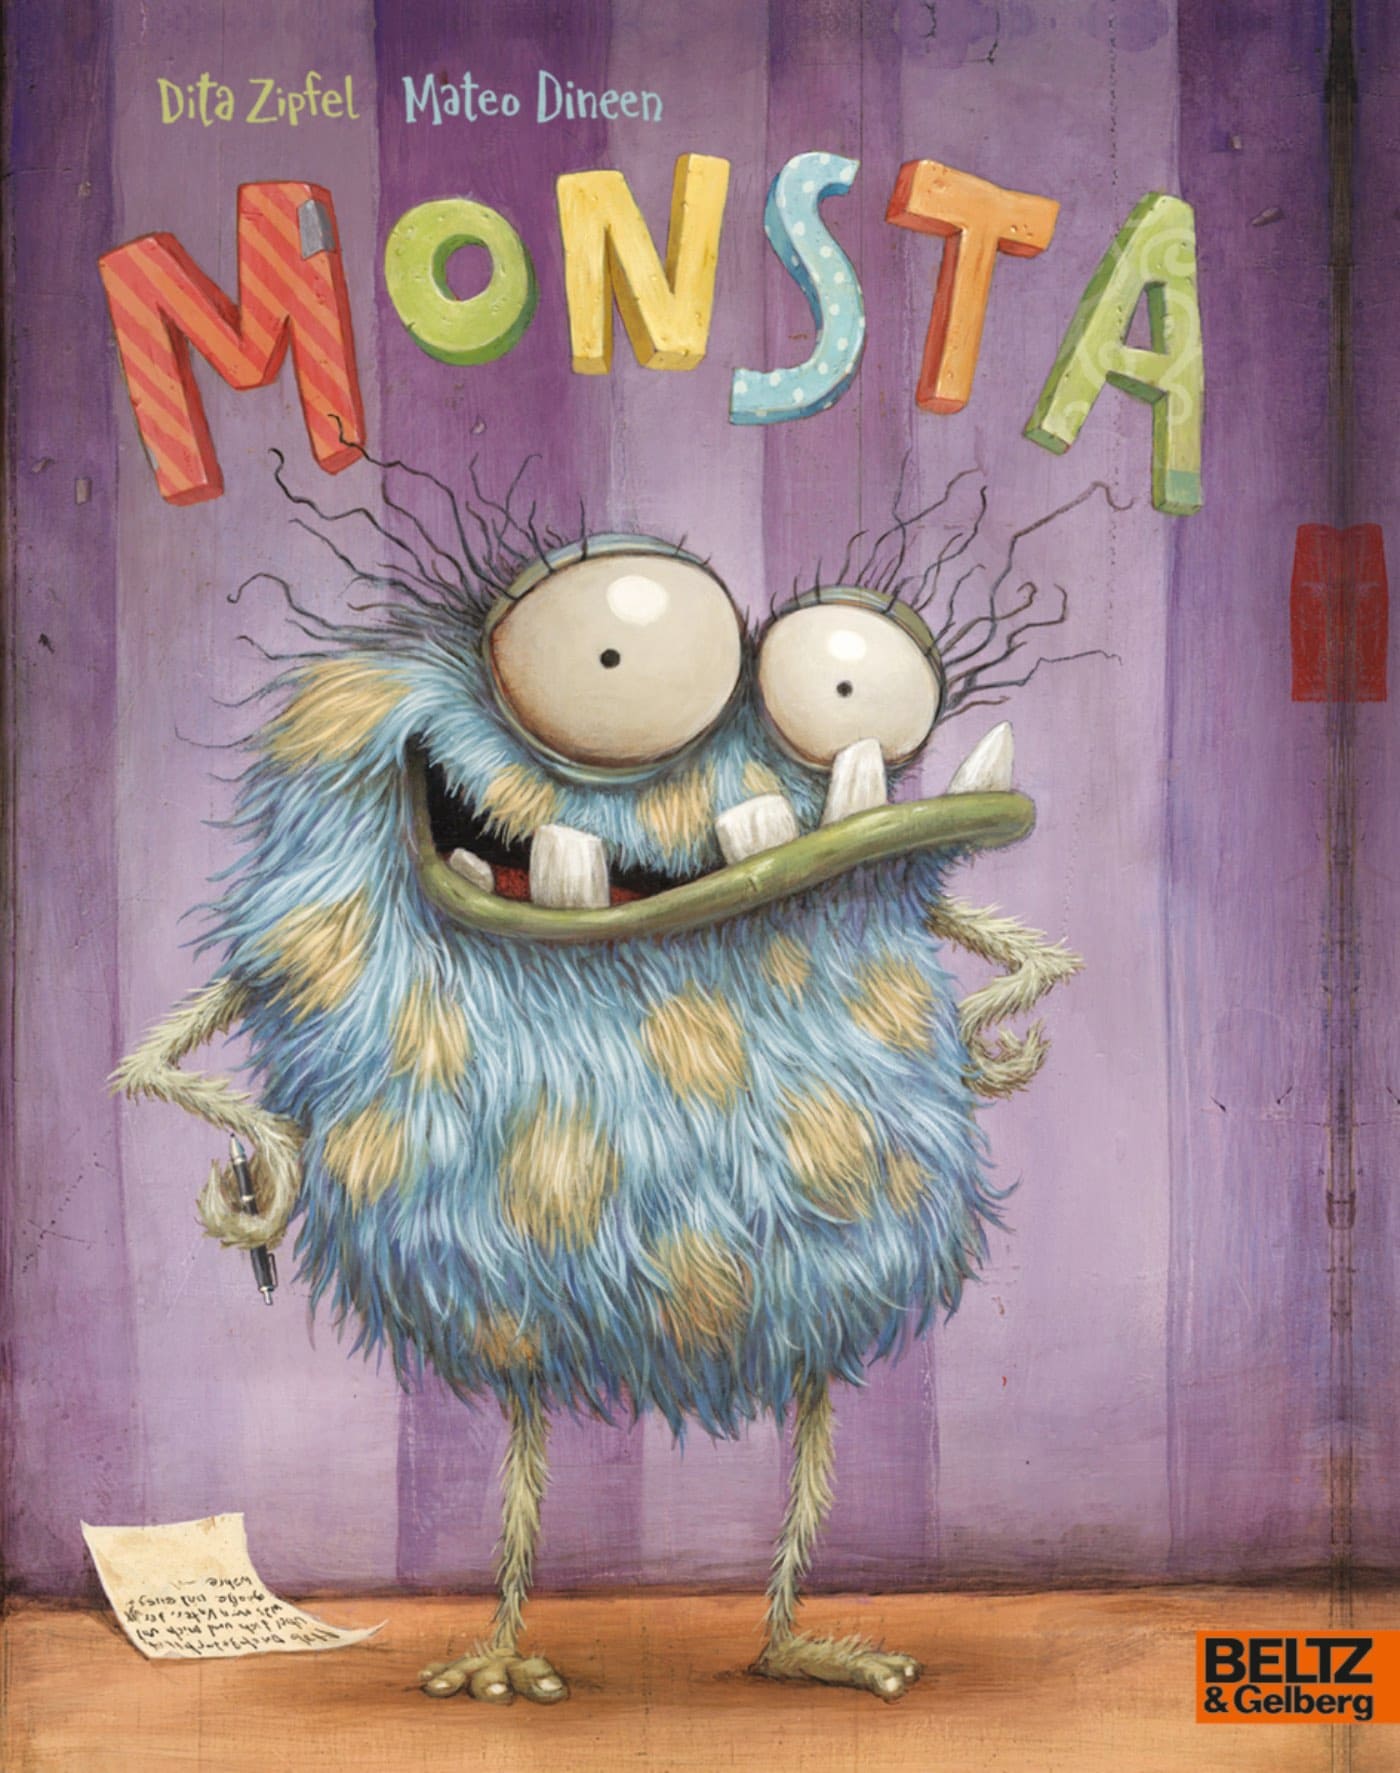 Monsterbücher Für Kinder: Monat Von Dita Zipfel // Himbeer